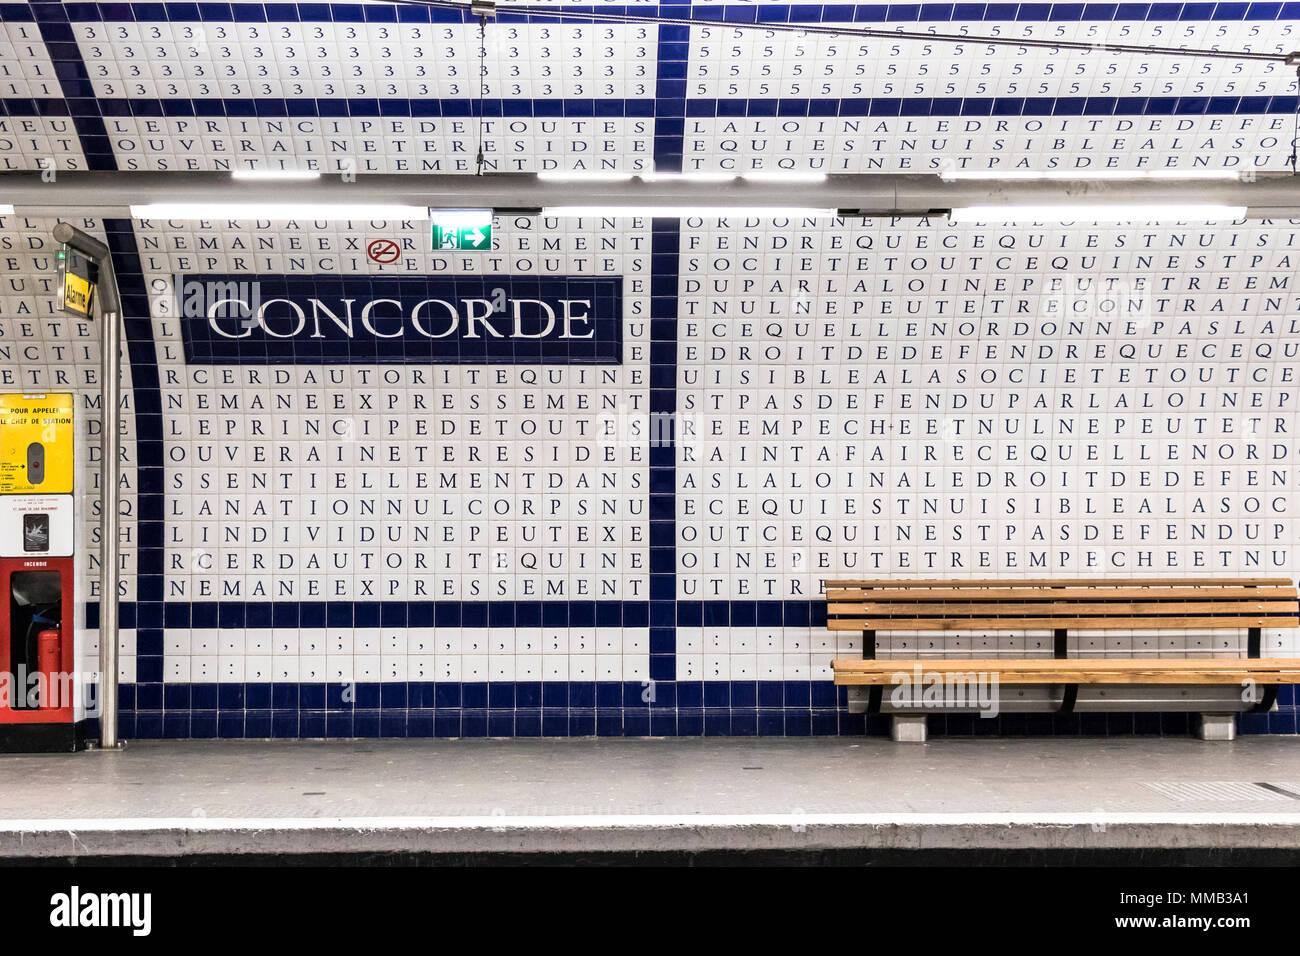 La station de métro Concorde Paris a 49 000 carreaux émaillés avec des lettres, couvrant la totalité de la voûte et les murs de cette station de la ligne 12 Banque D'Images